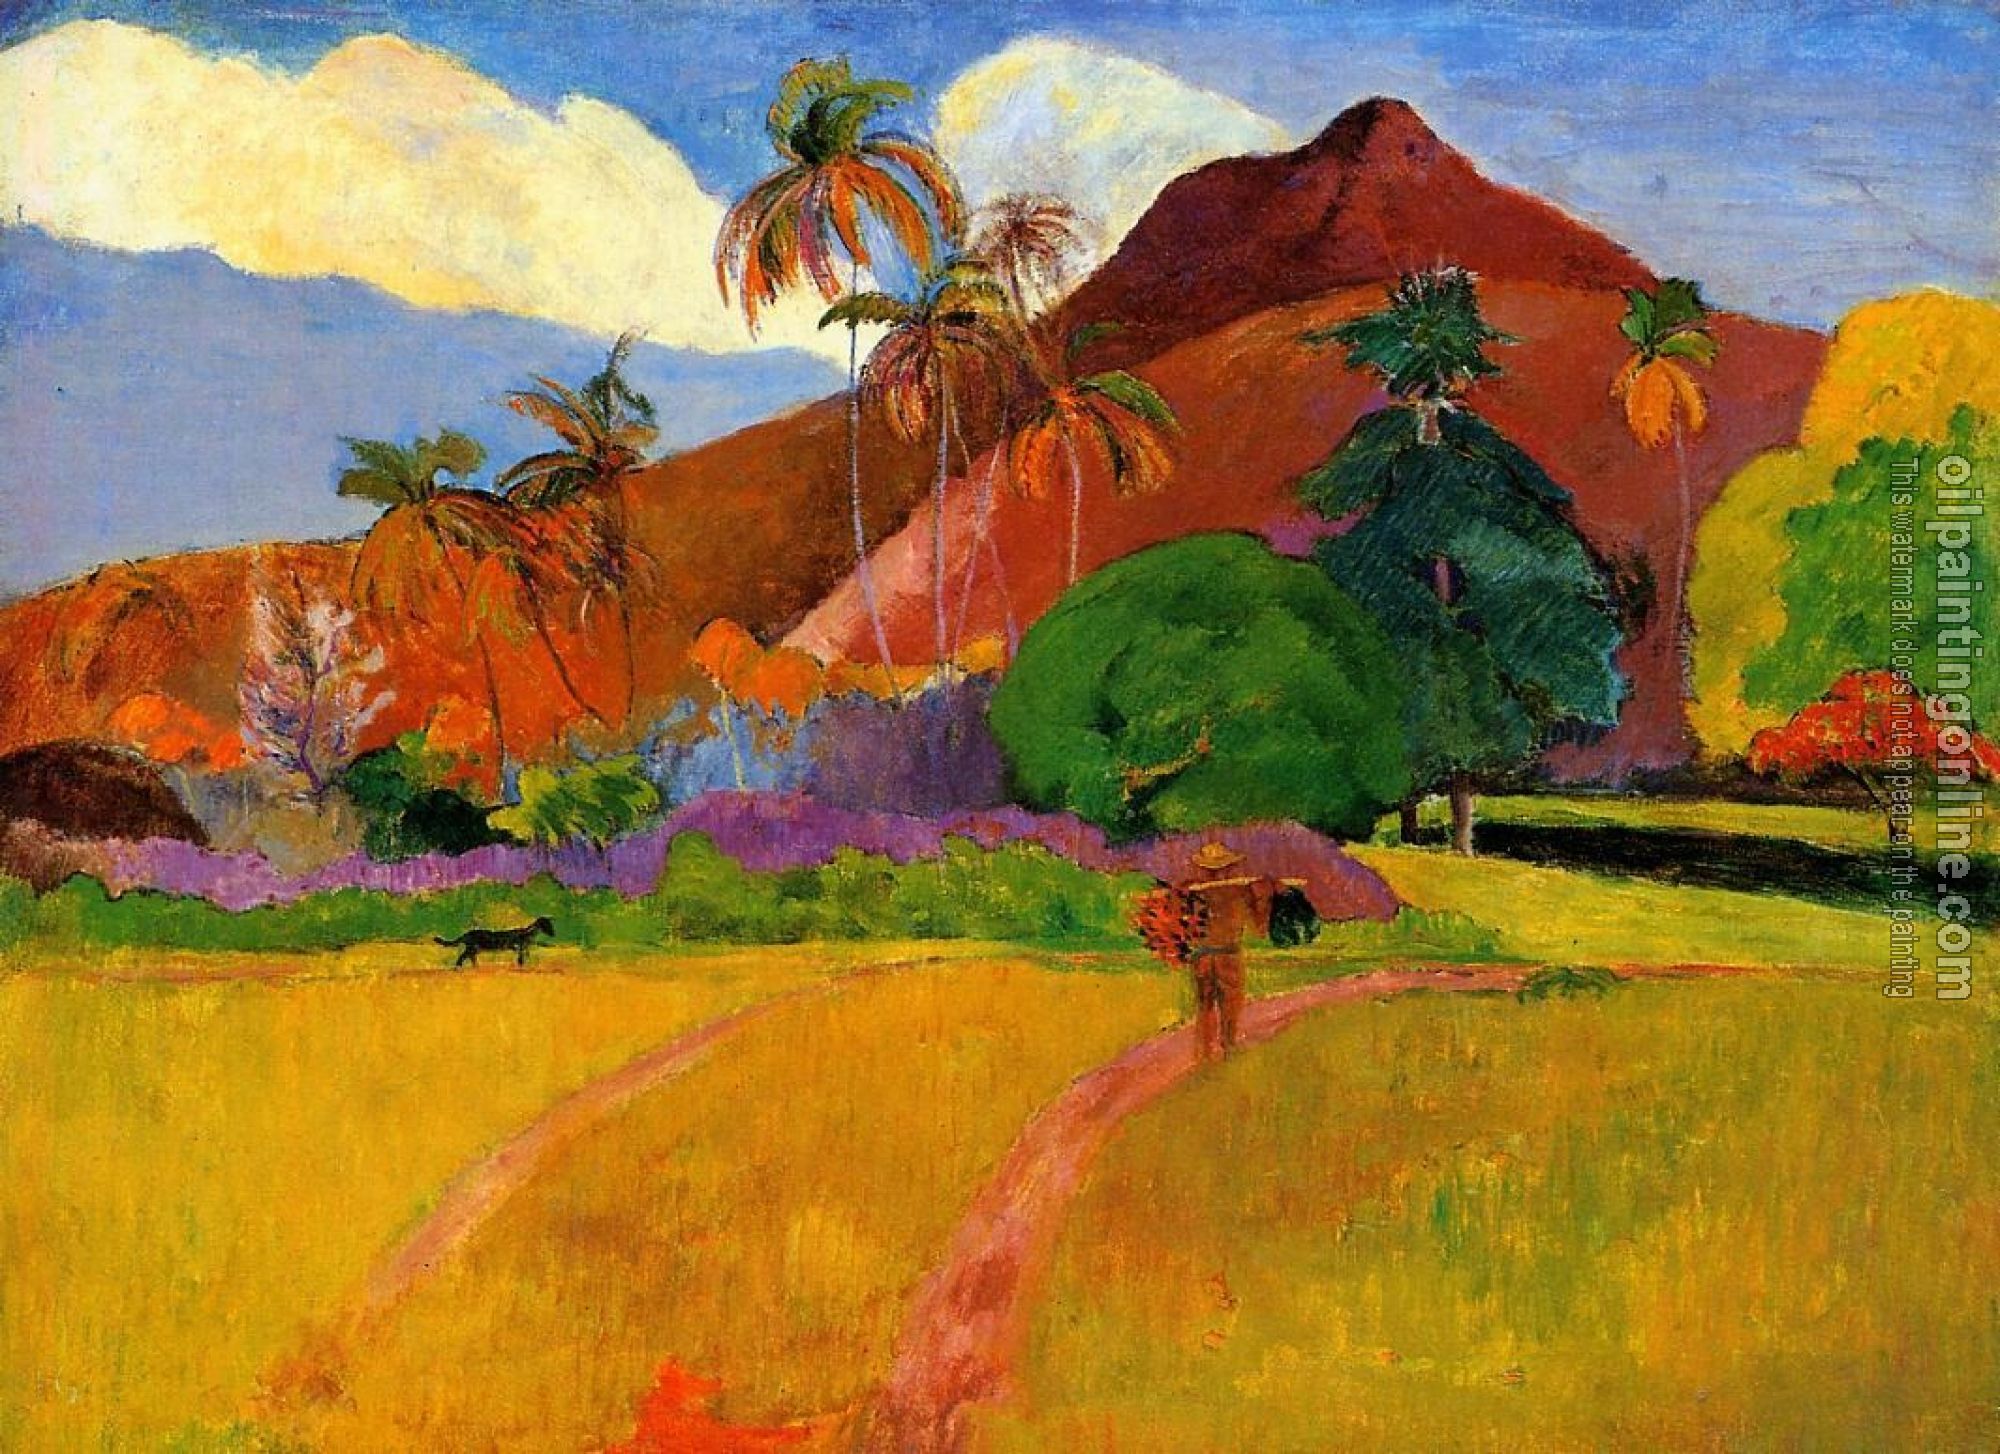 Gauguin, Paul - Mountains in Tahiti